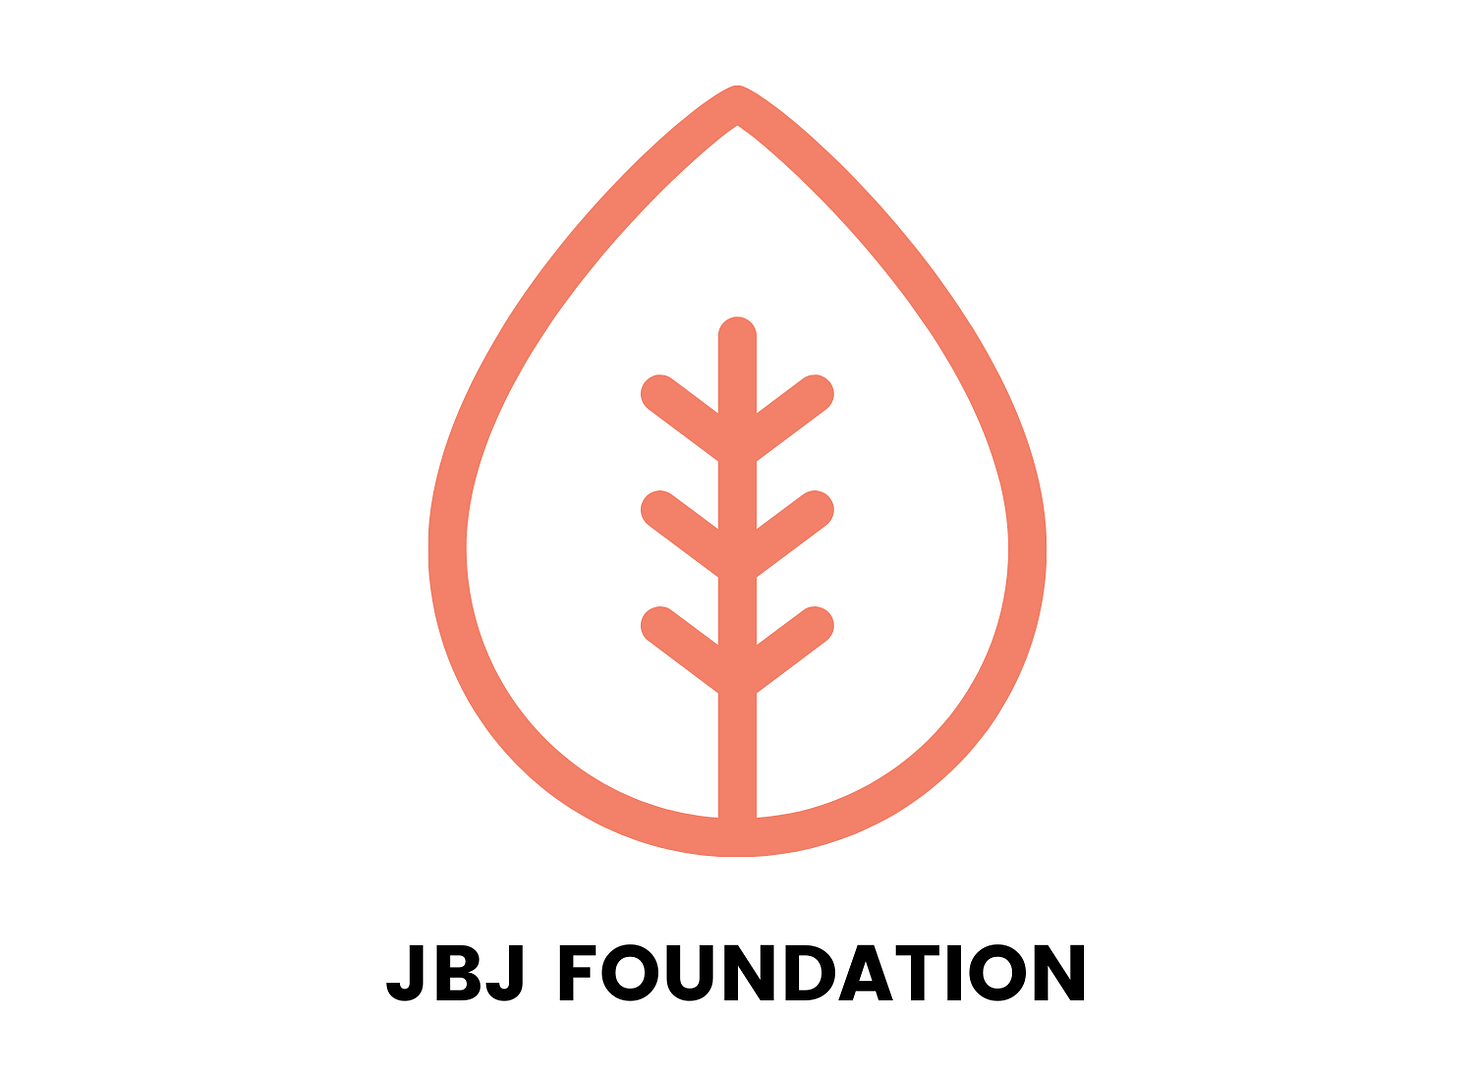 JBJ Foundation